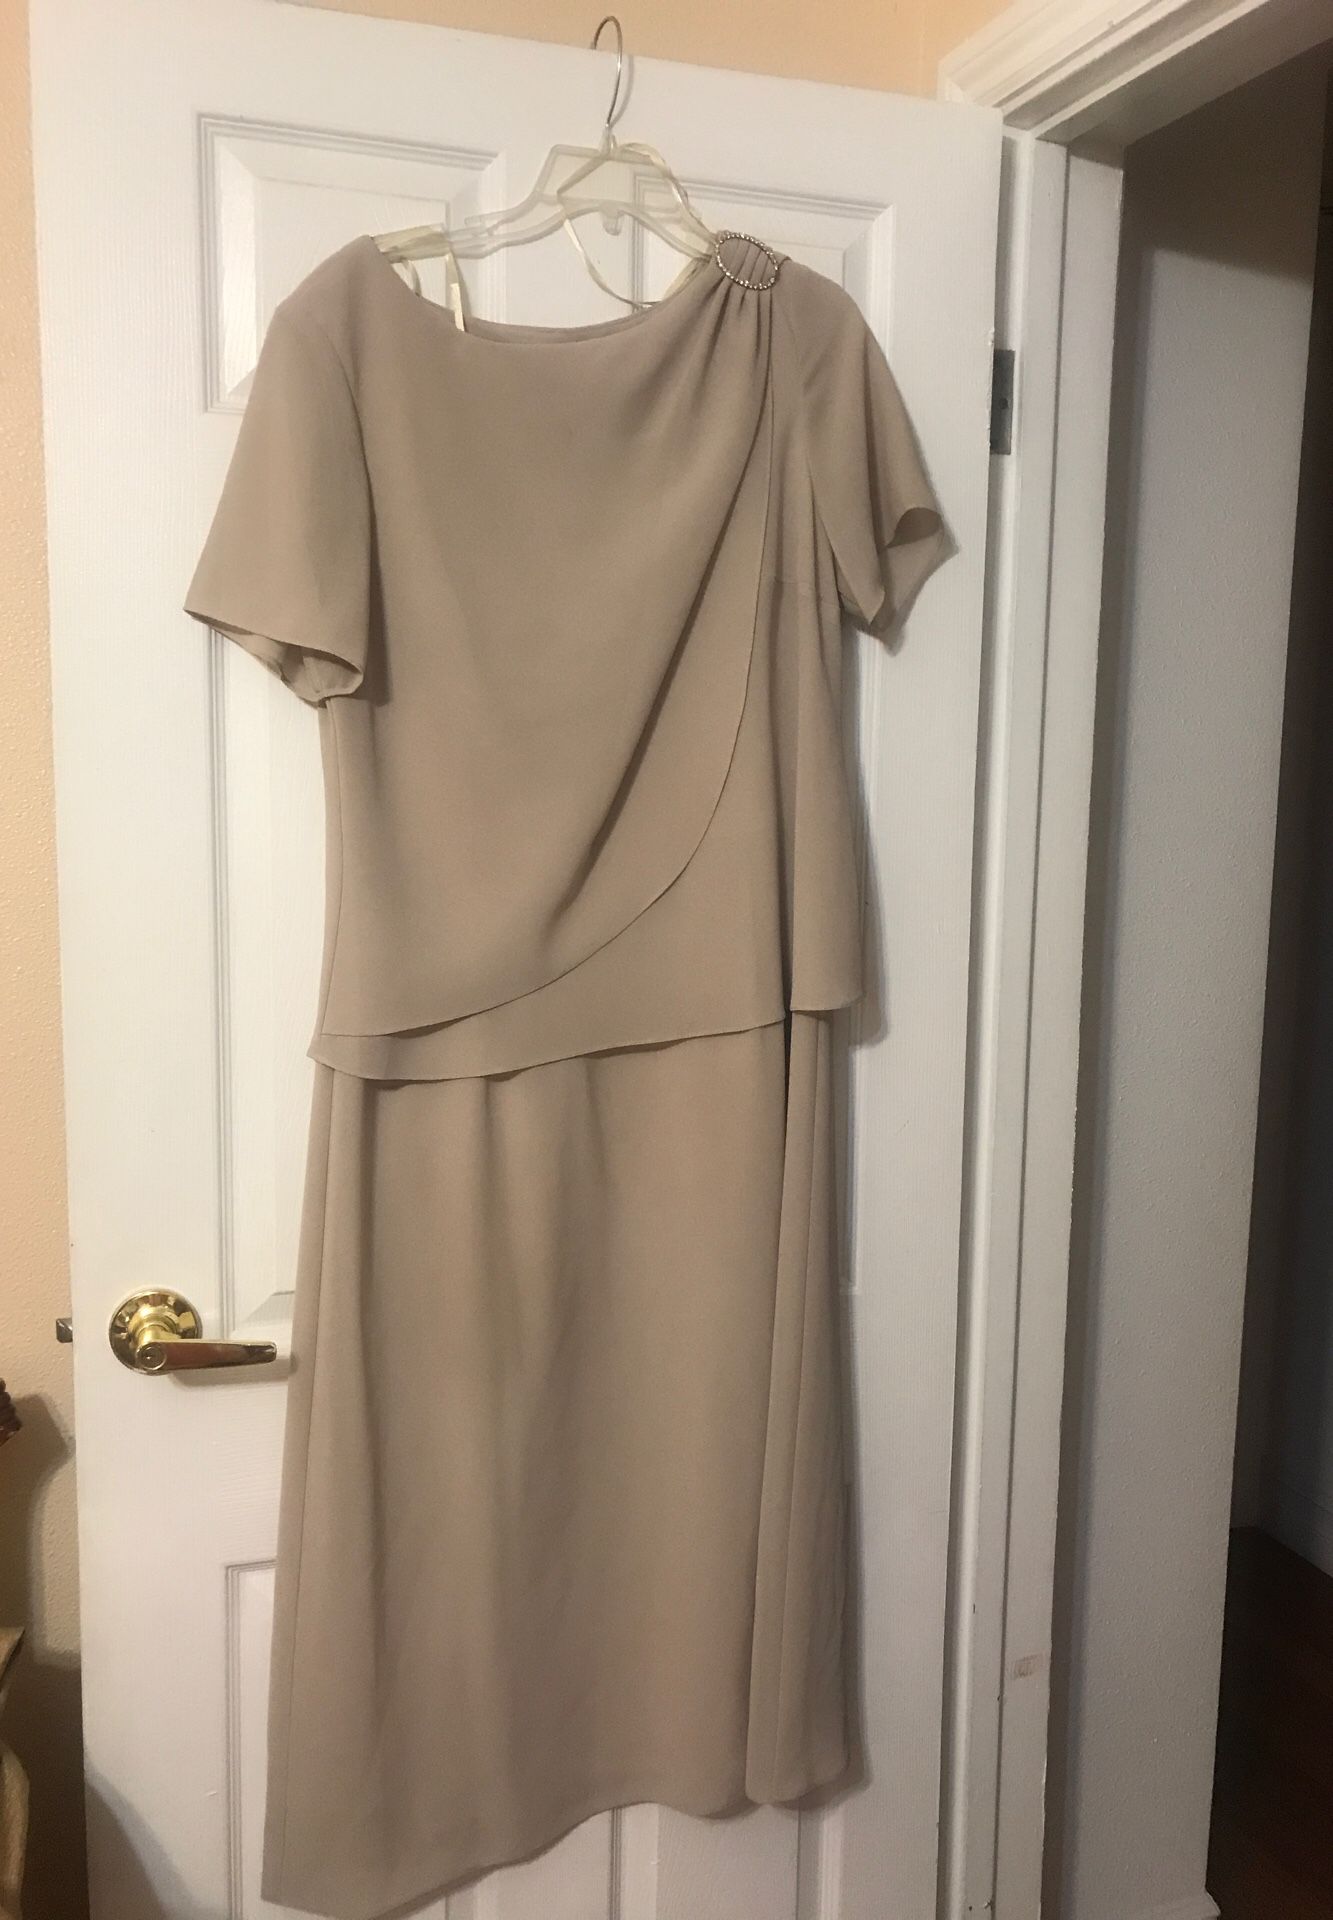 Size 16 long dress